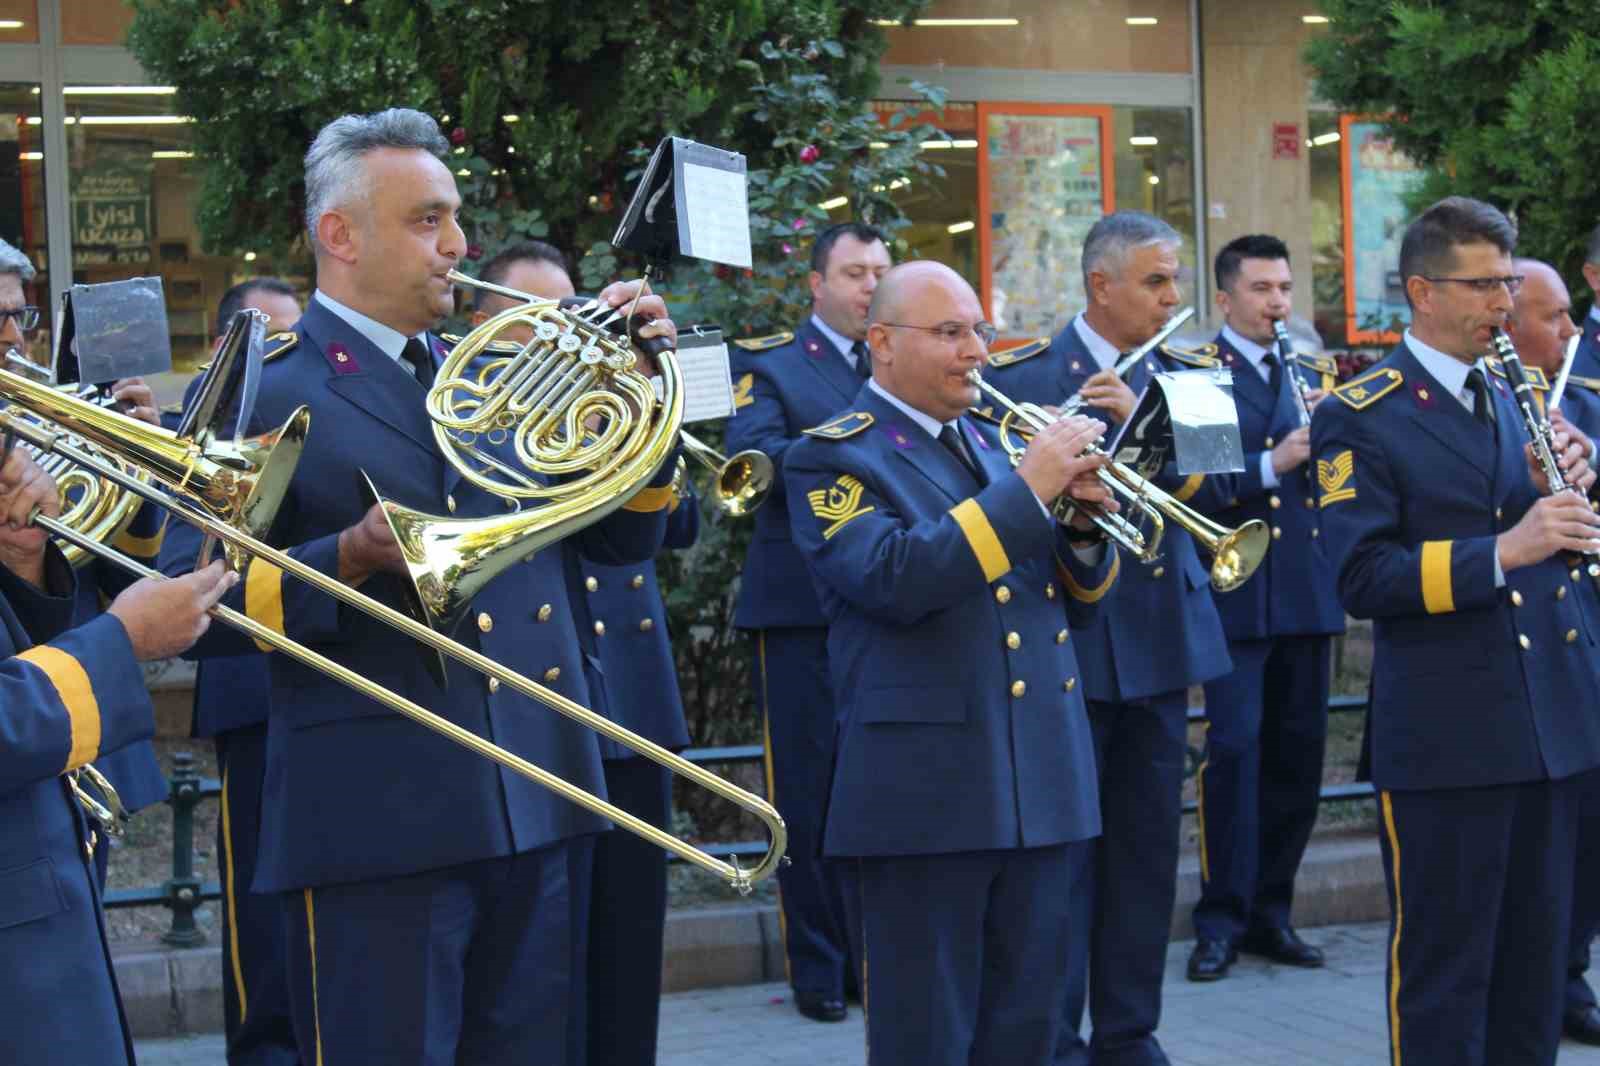 Eskişehir’de Gaziler Günü’ne özel Bando Konseri düzenlendi